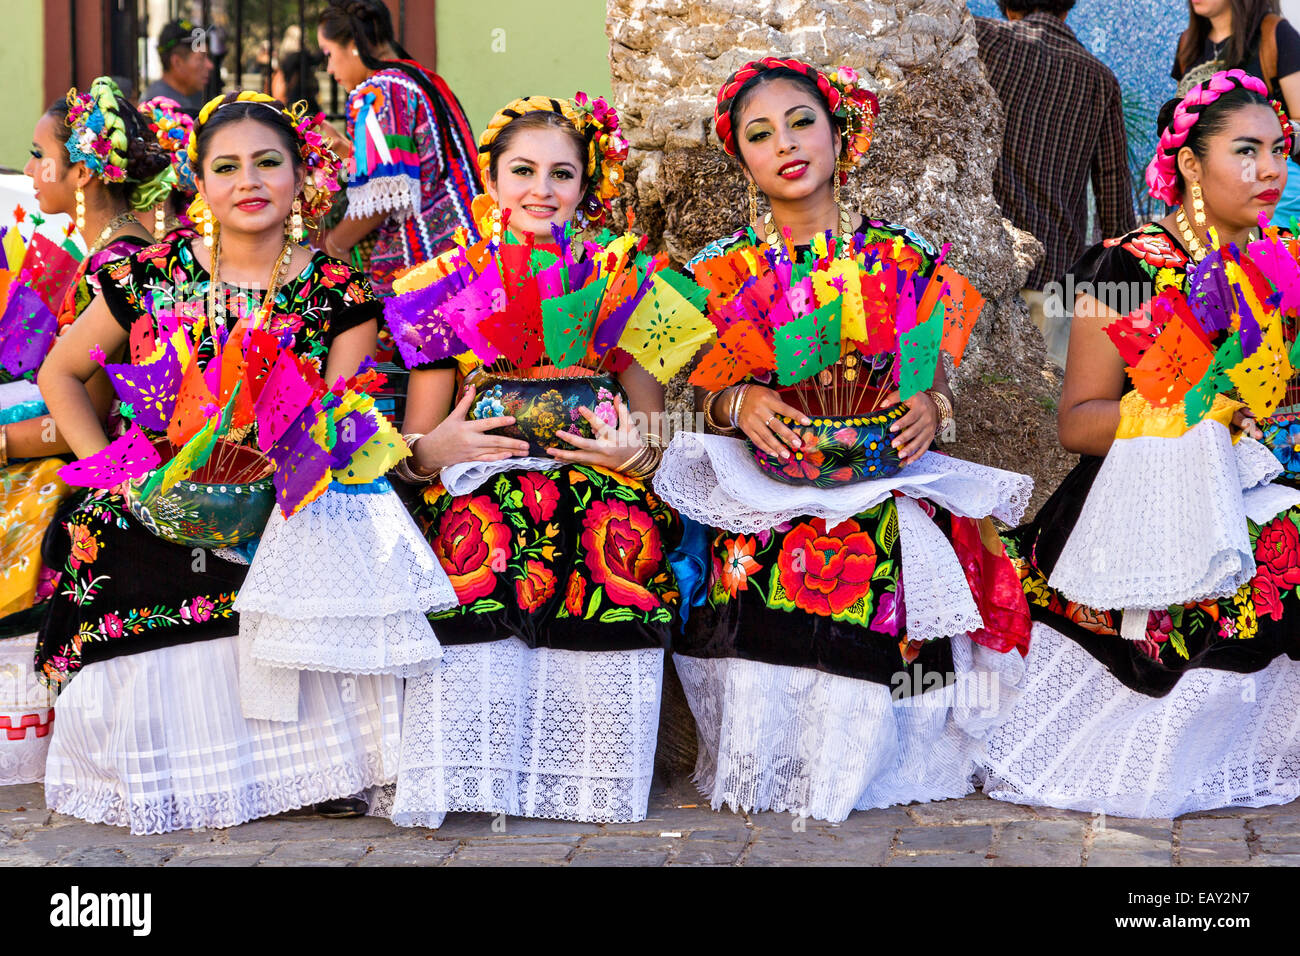 Traditionell kostümierten Volkstänzer während des Tages der Toten Festival bekannt in Spanisch als Día de Muertos am 26. Oktober 2014 in Stockfoto